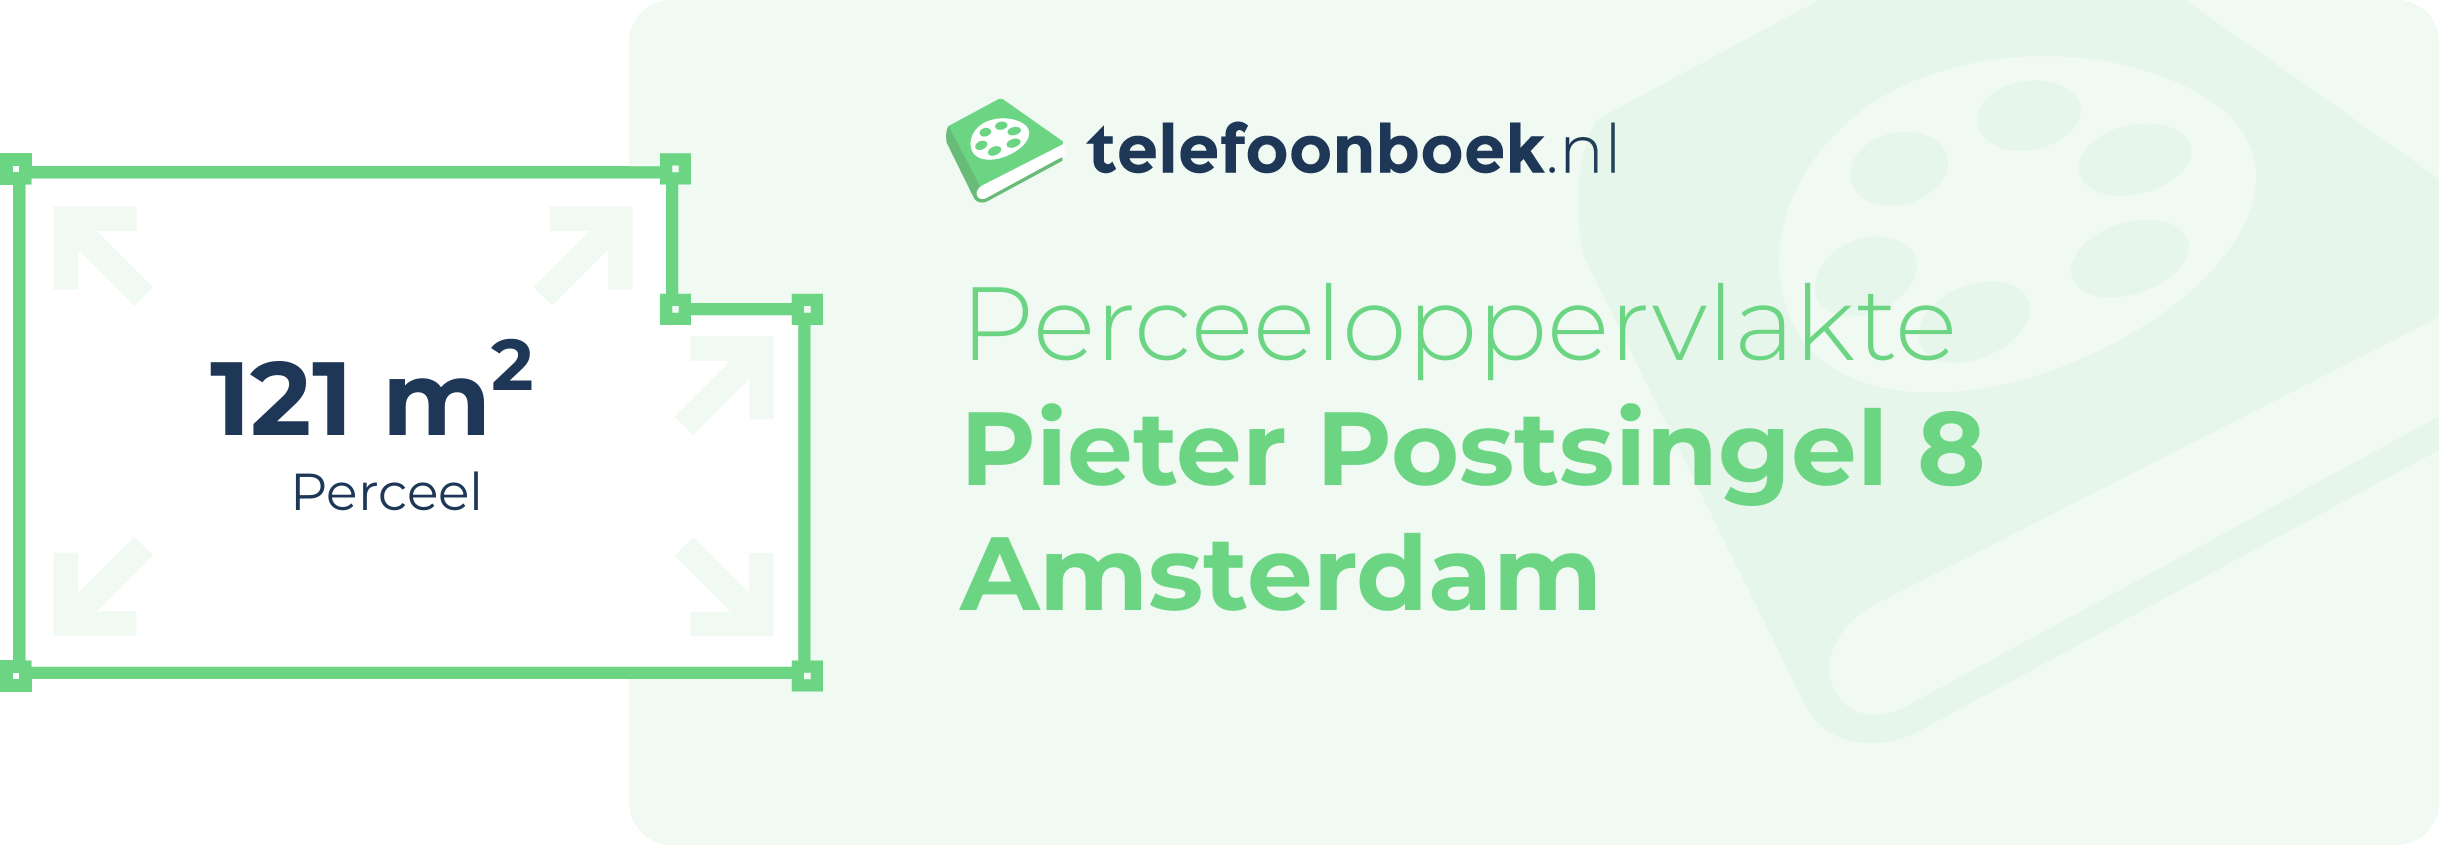 Perceeloppervlakte Pieter Postsingel 8 Amsterdam